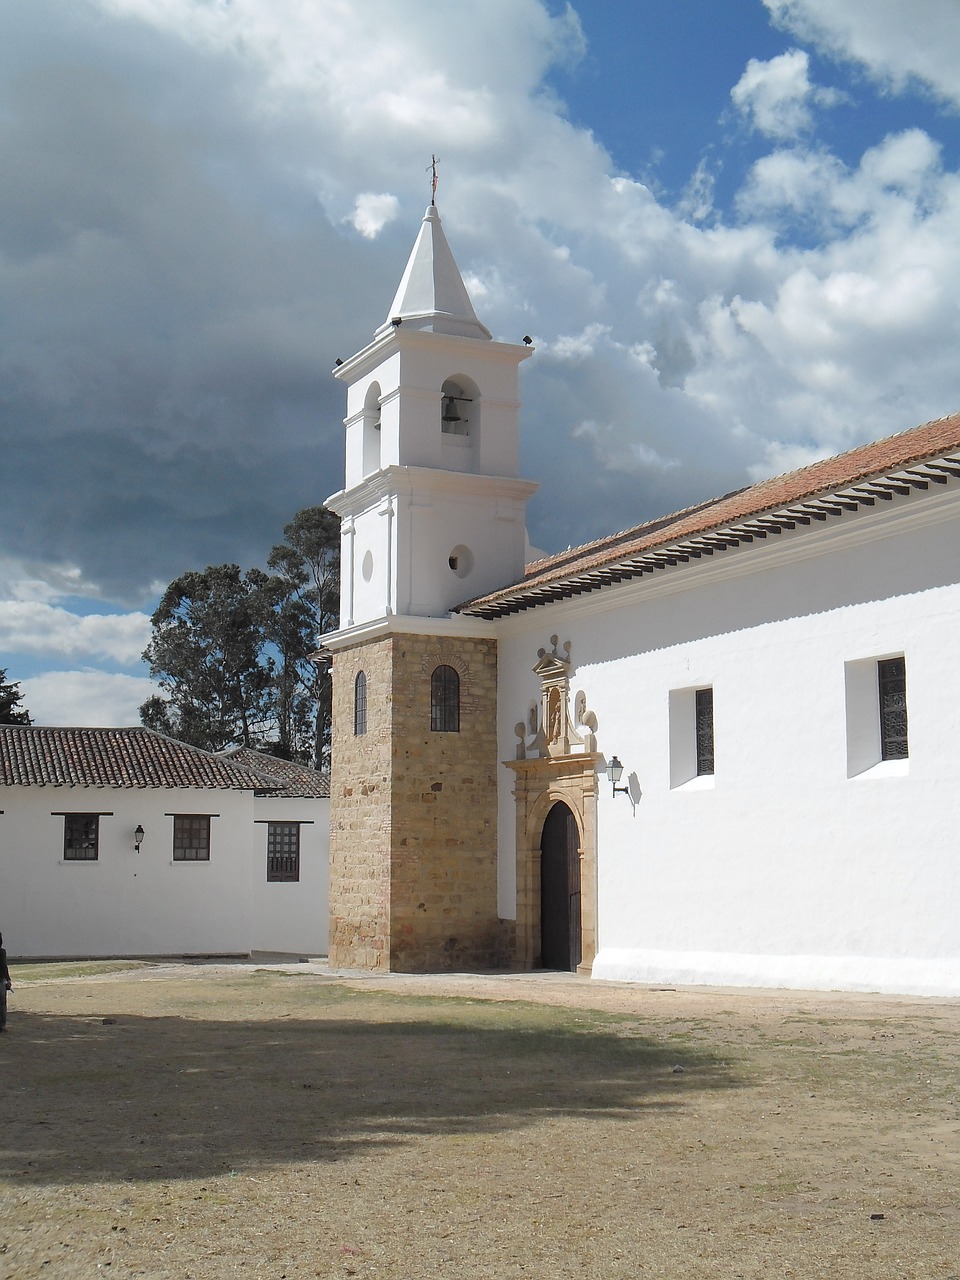 convent villa de leyva colombia free photo